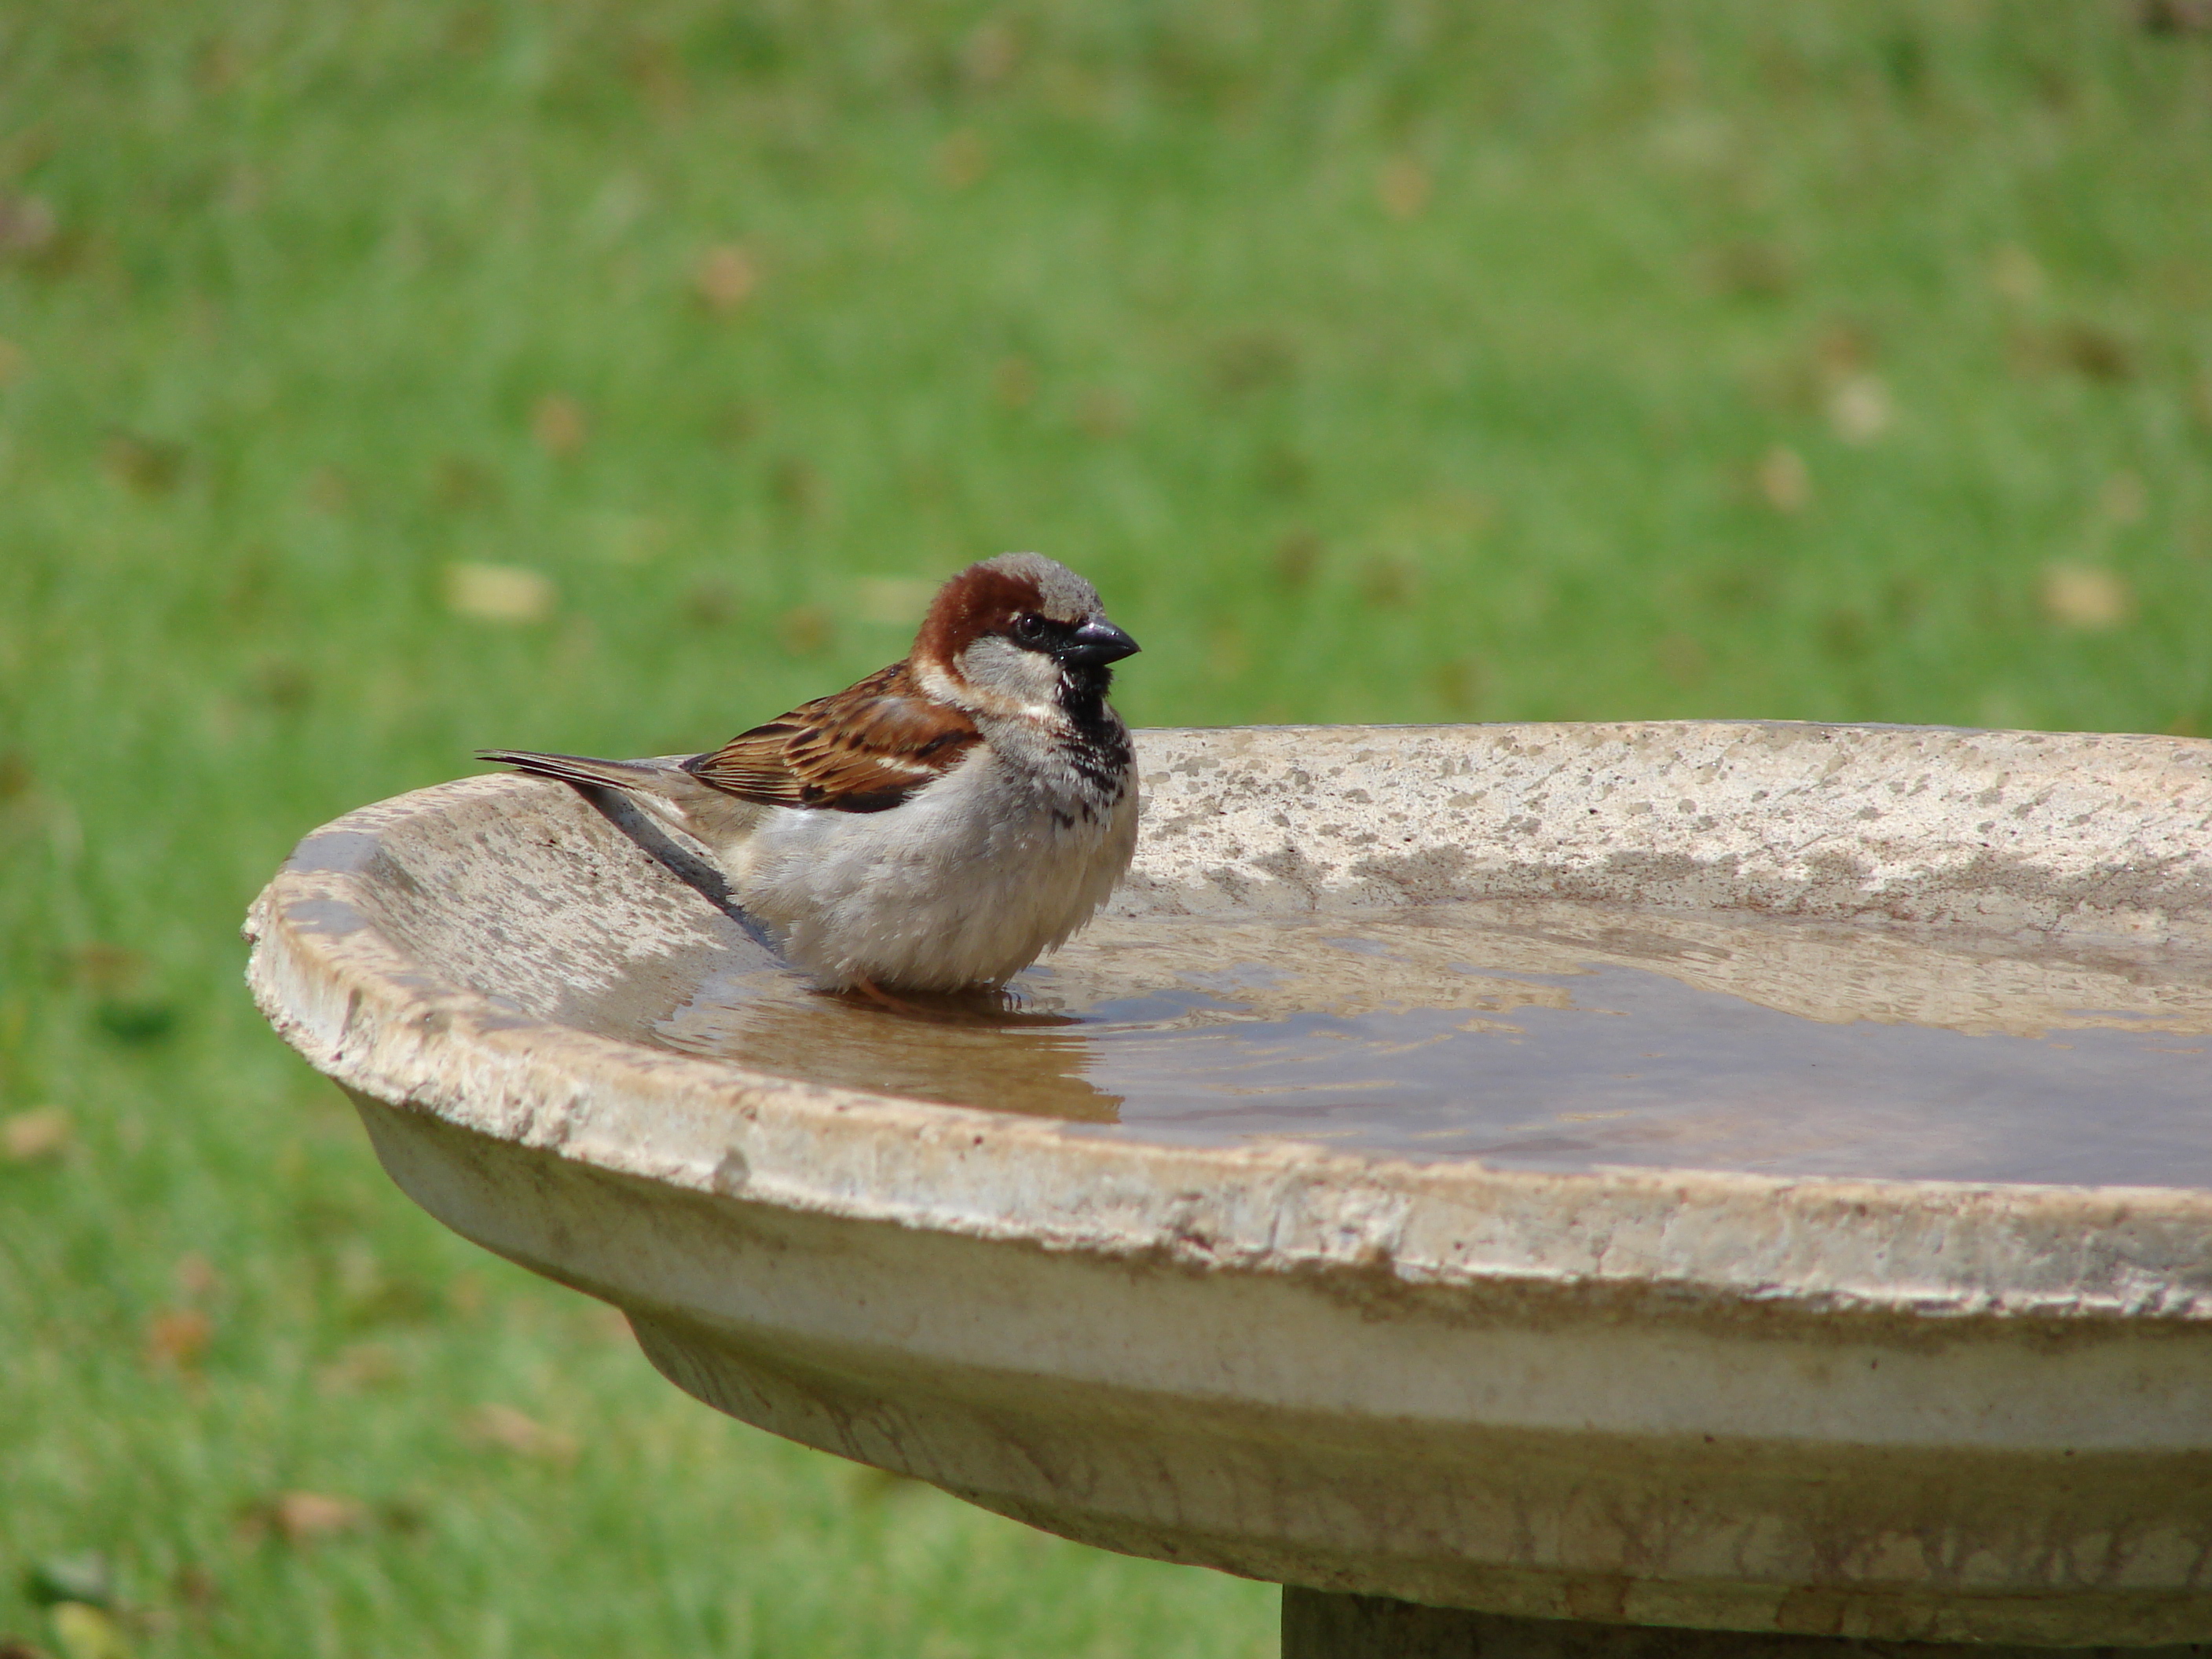 Small bird bath with a bird on it